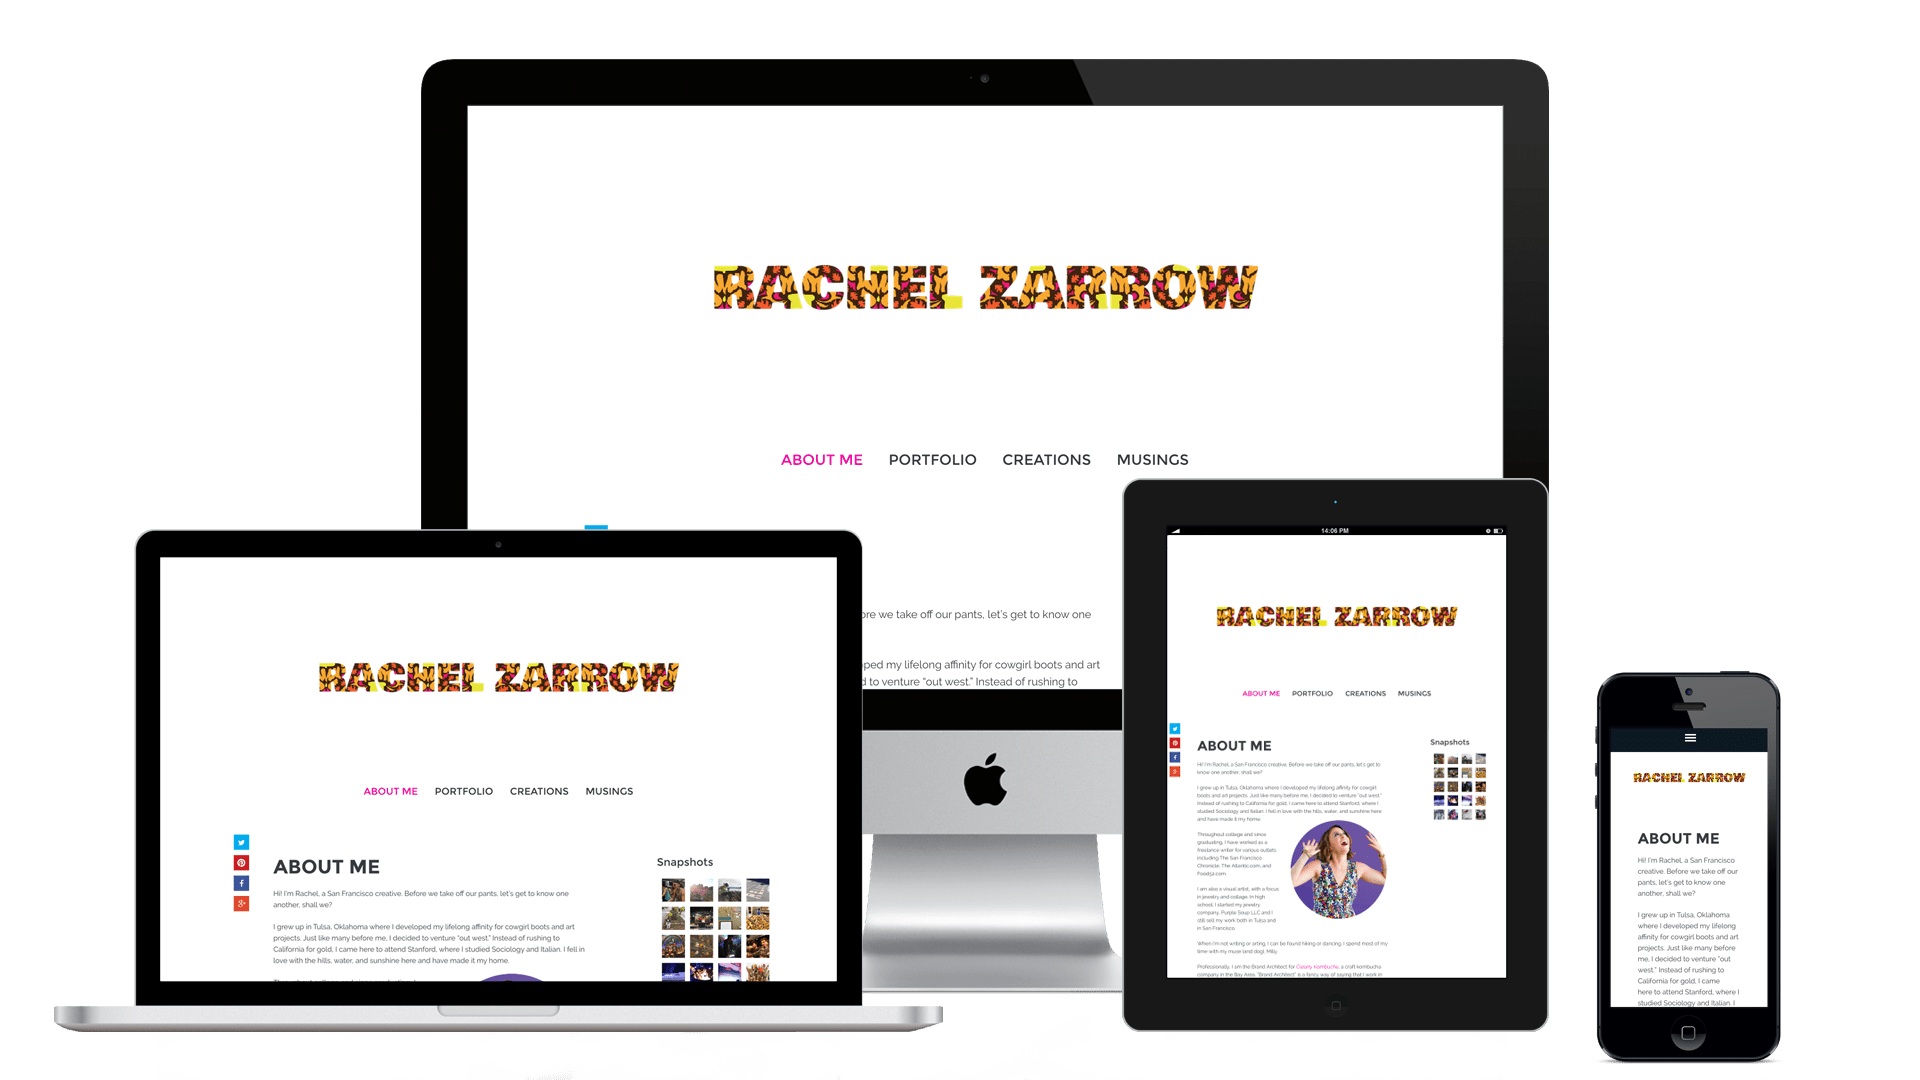 rachelzarrow.com - The Chase Design - Rachel Zarrow